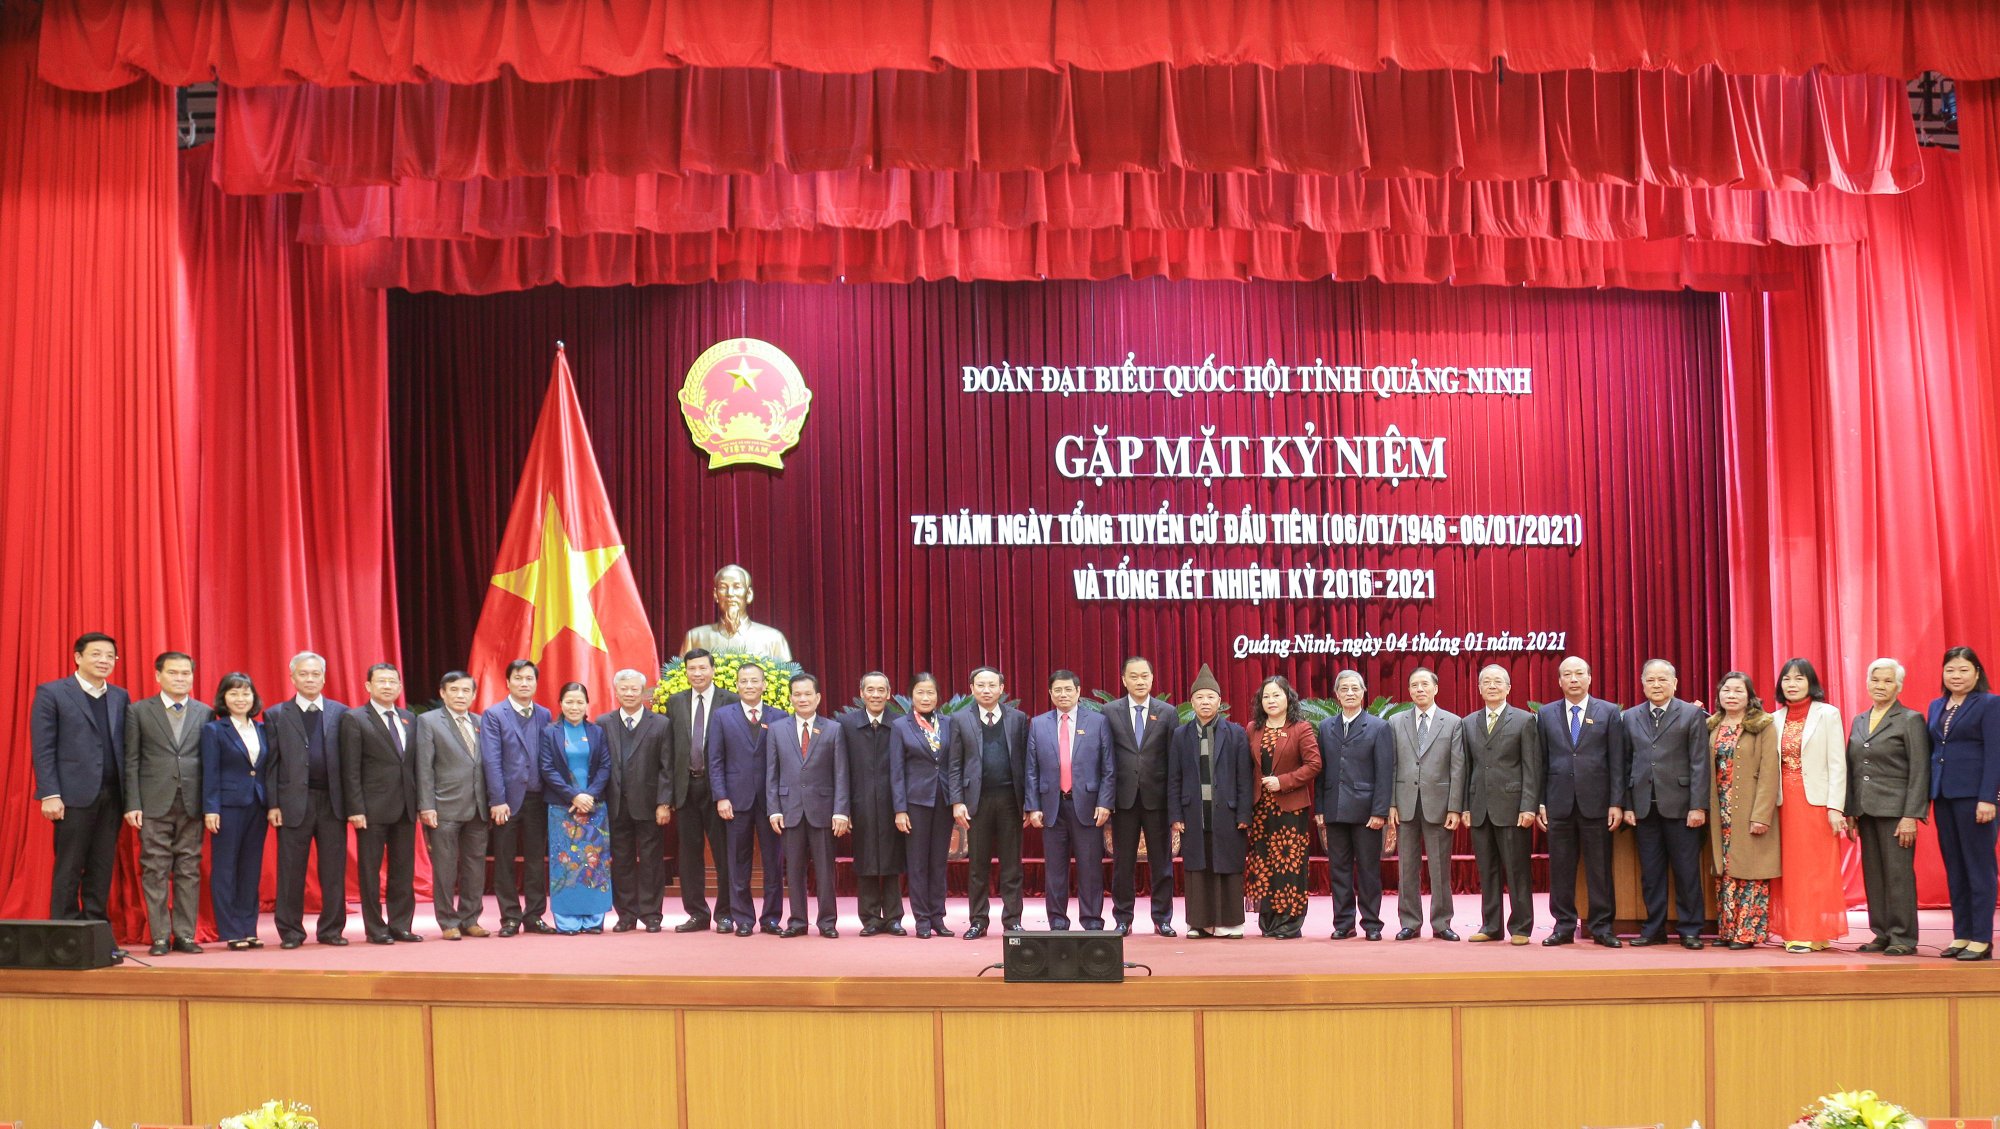 Các vị ĐQBH tỉnh Quảng Ninh qua các thời kỳ chụp ảnh lưu niệm cùng các đồng chí lãnh đạo tỉnh tại buổi lễ kỷ niệm.